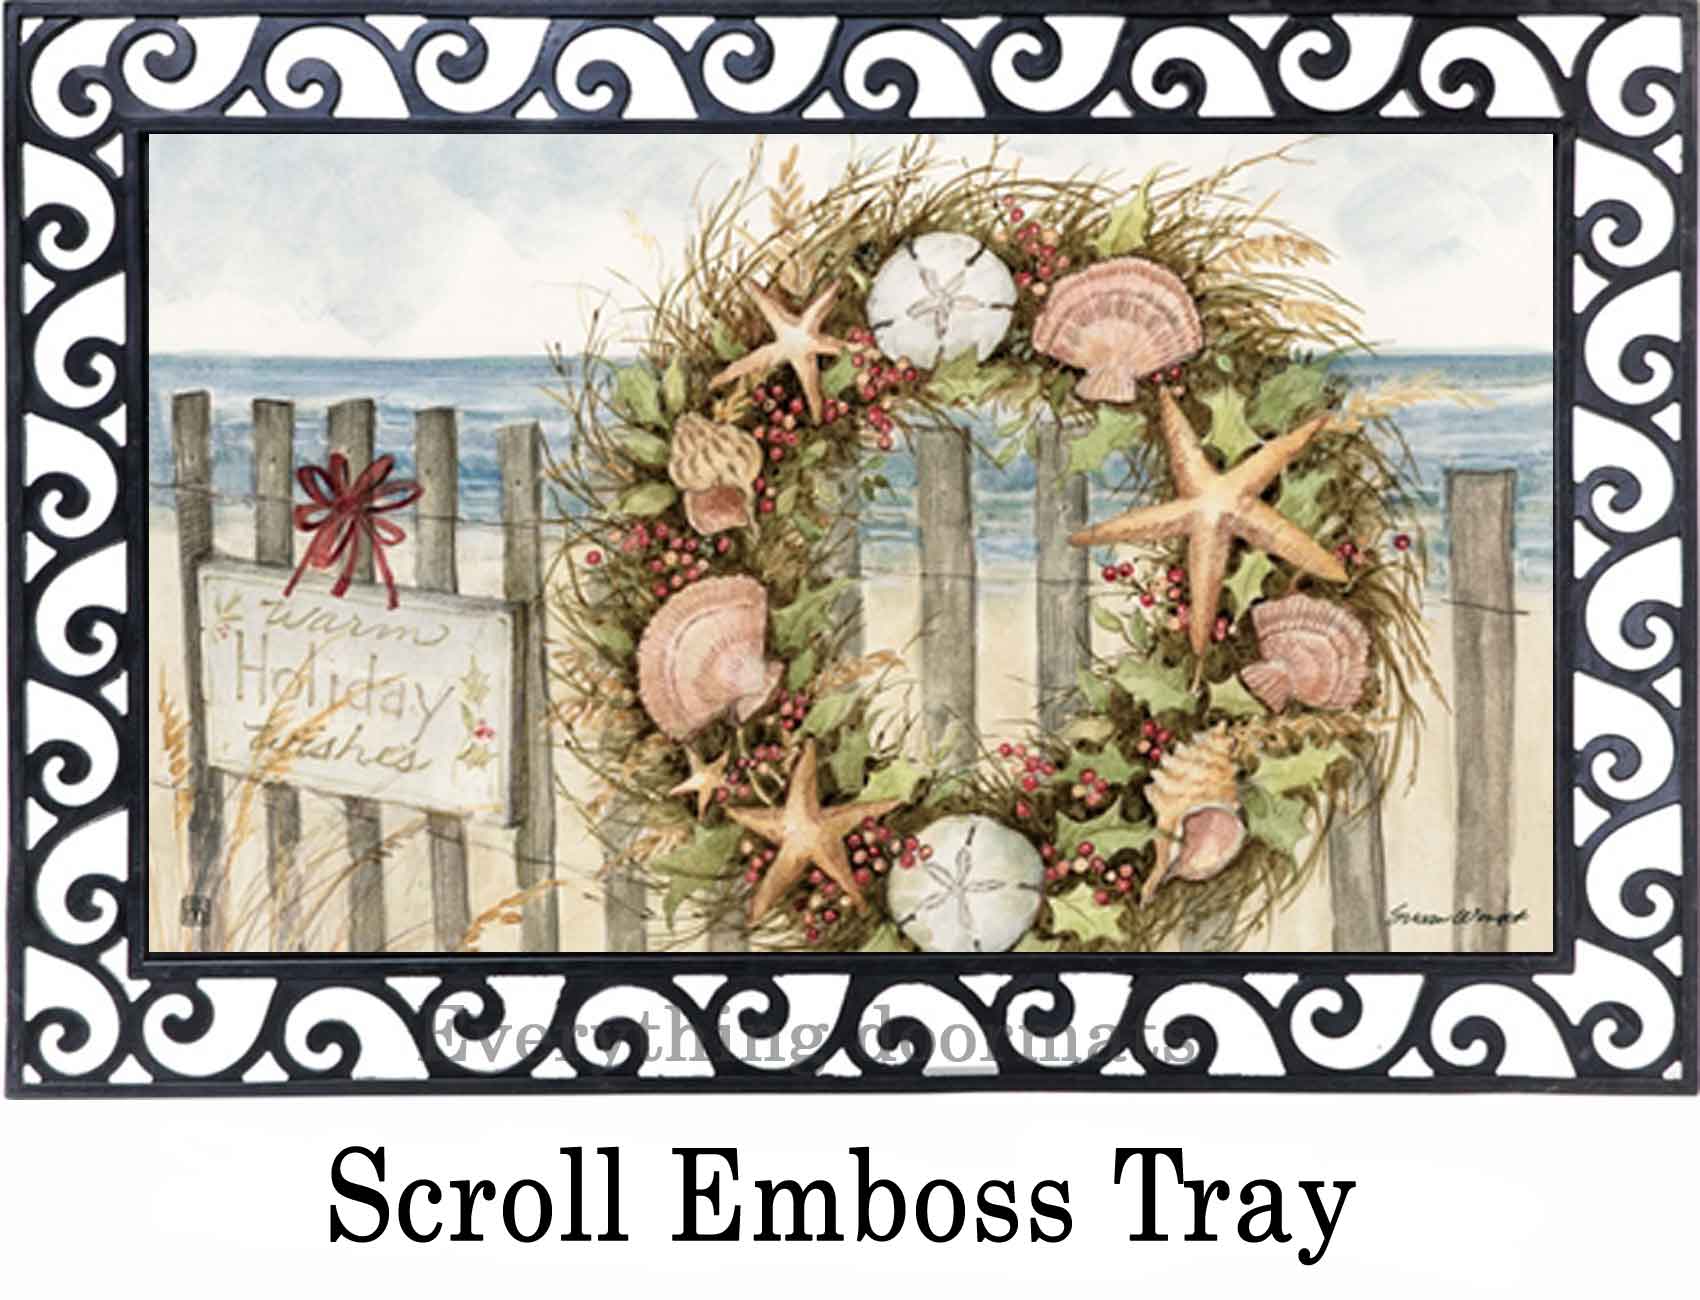 https://www.everythingdoormats.com/images/products/beach-wreath-matmates-insert-doormat-in-outdoor-scroll-emboss-doormat-tray.jpg